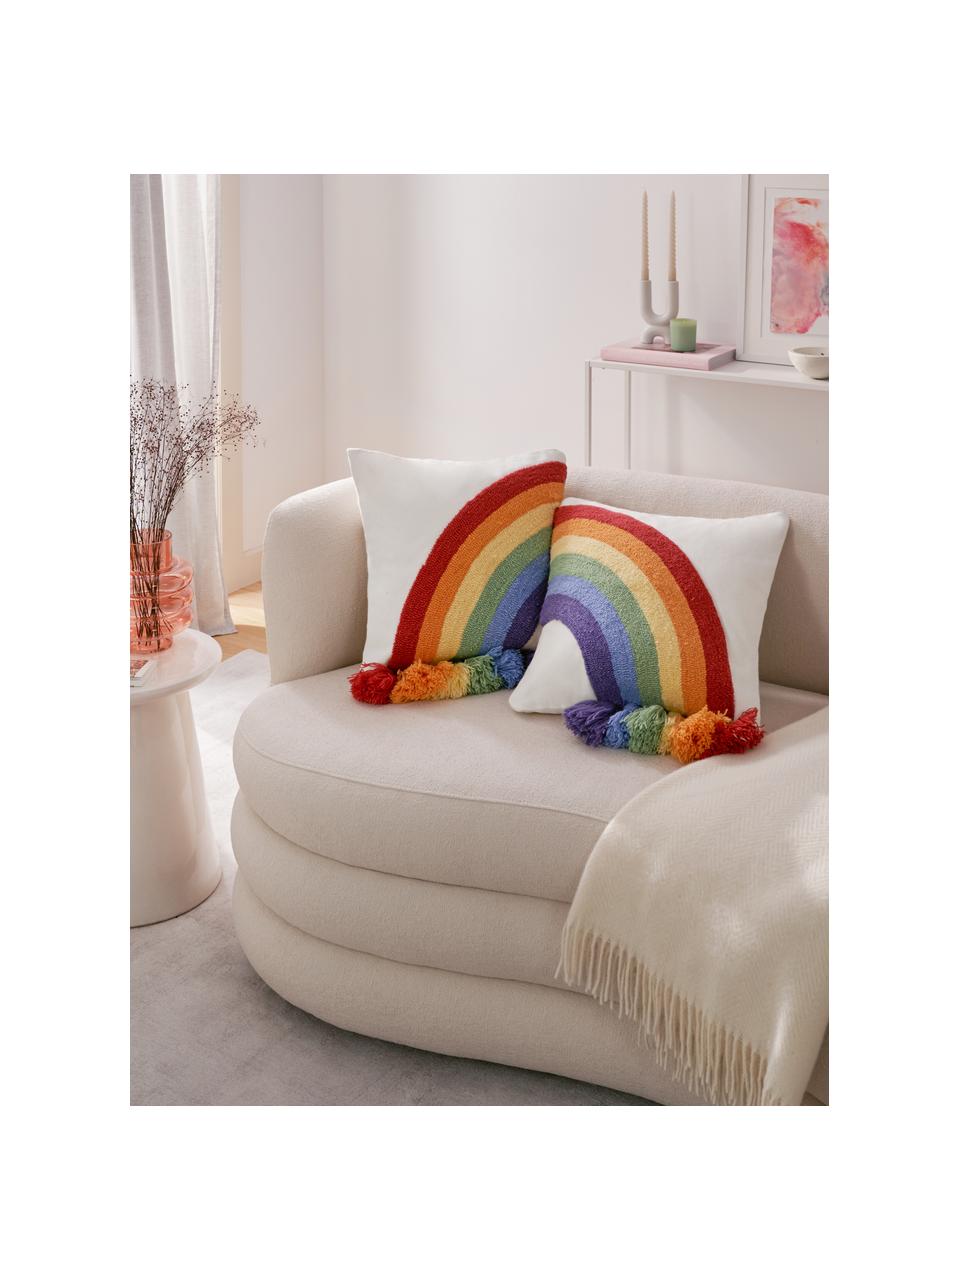 Kussenhoezen Cary met regenboog en kwastjes in multicolour, set van 2, Wit, multicolour, B 45 x L 45 cm